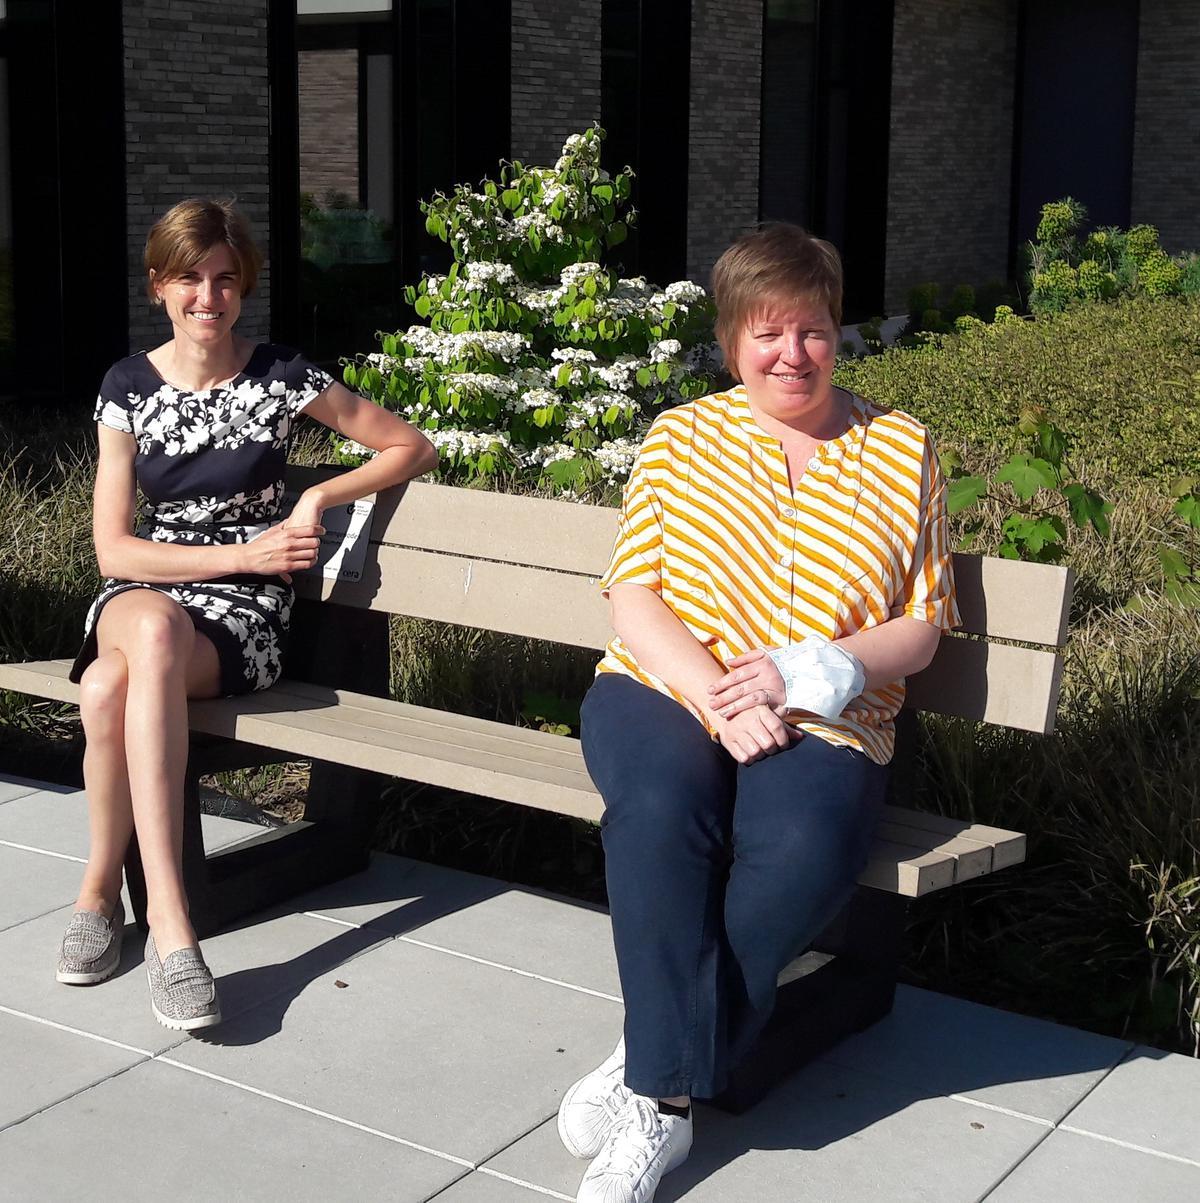 Links zien we campusdirecteur Delphine Bouwet en rechts algemeen directeur Sylvie Vanhoutteghem.© SD